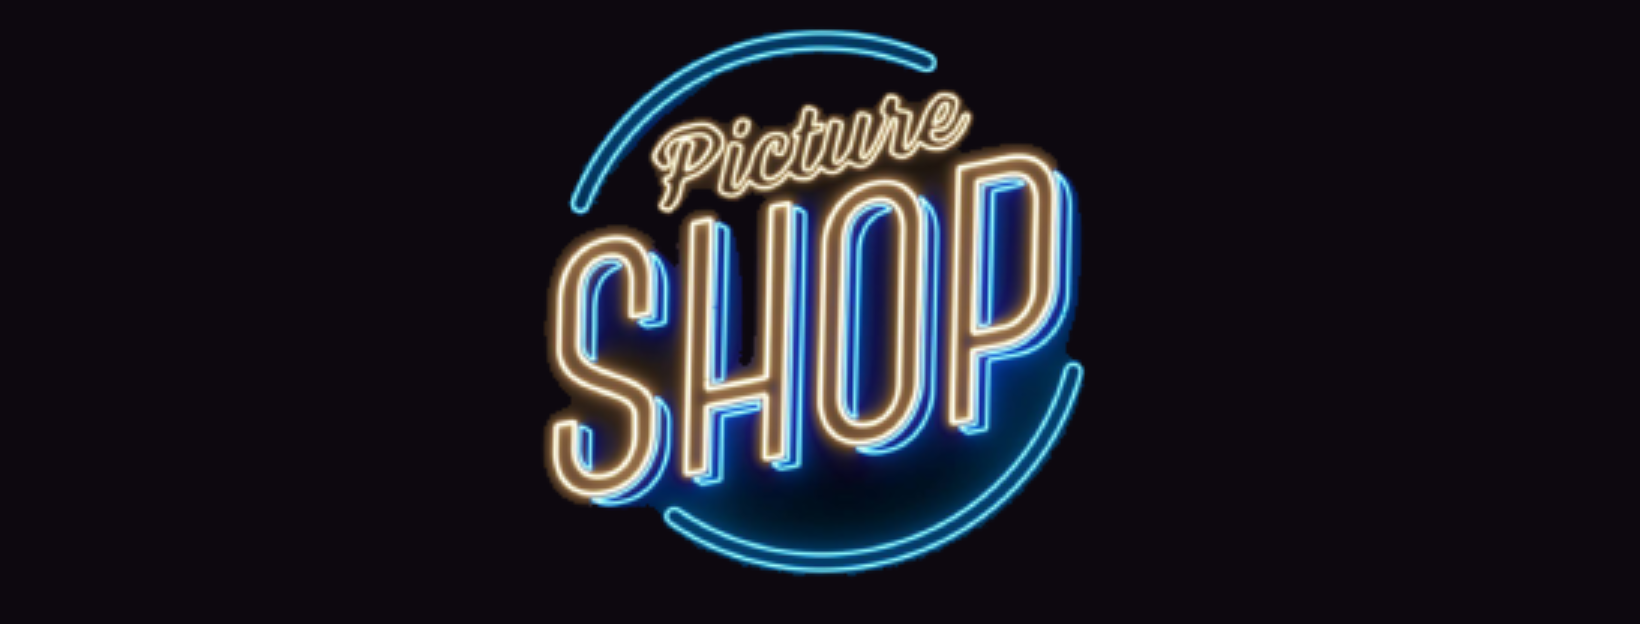 Picture Shop Image